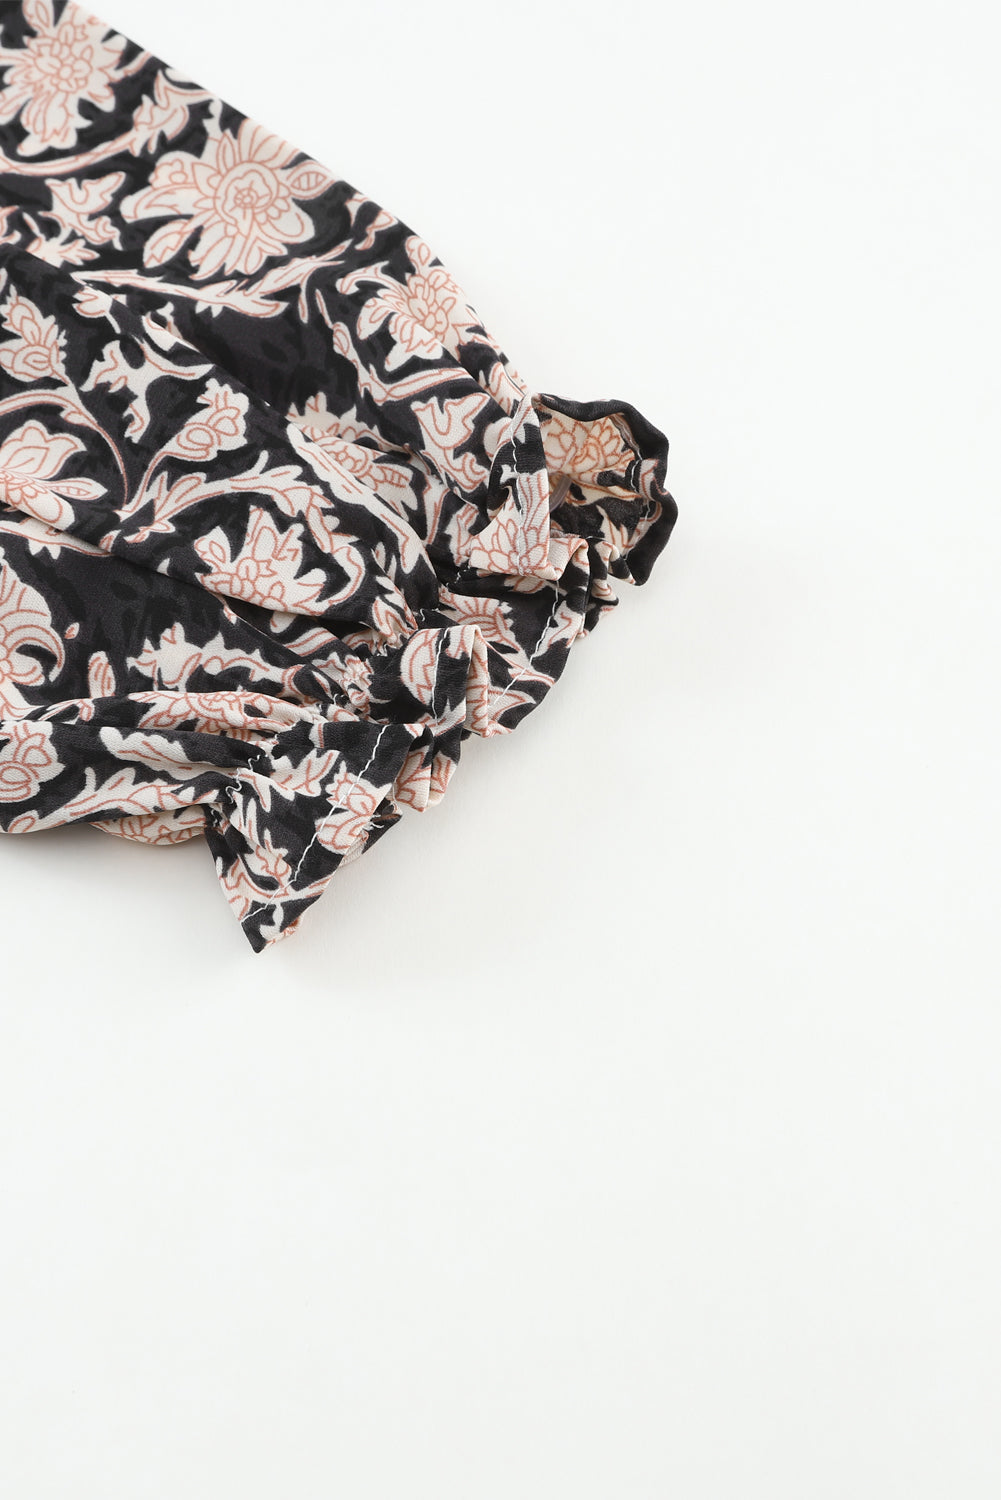 Schwarze, geblümte Bluse mit geschlitztem Ausschnitt und plissierten Puffärmeln